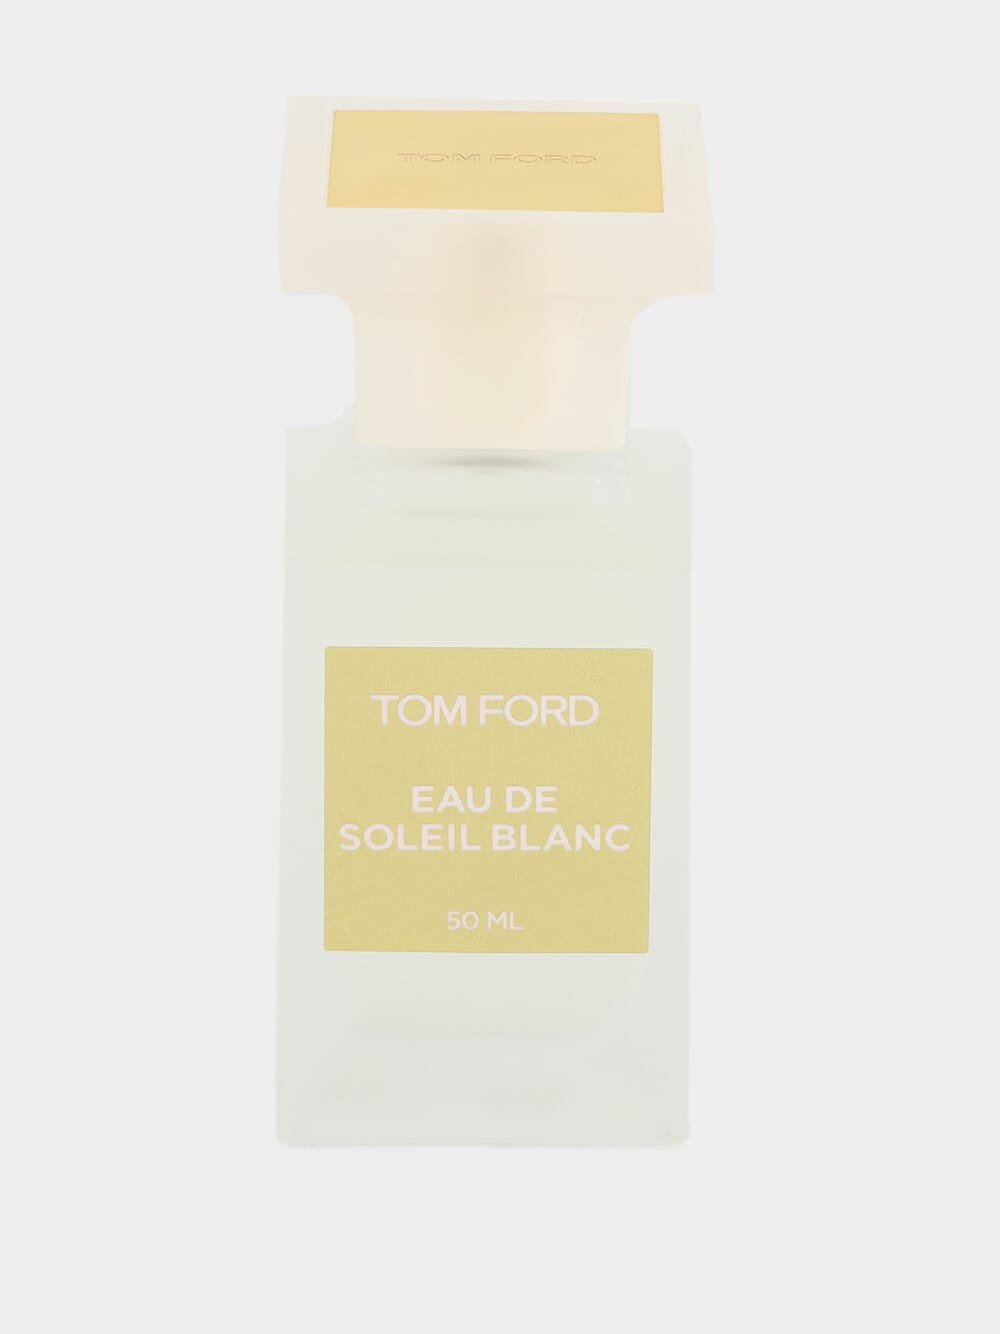 Tom FordEau De Soleil Blanc Eau De Toilette 50ml at Fashion Clinic